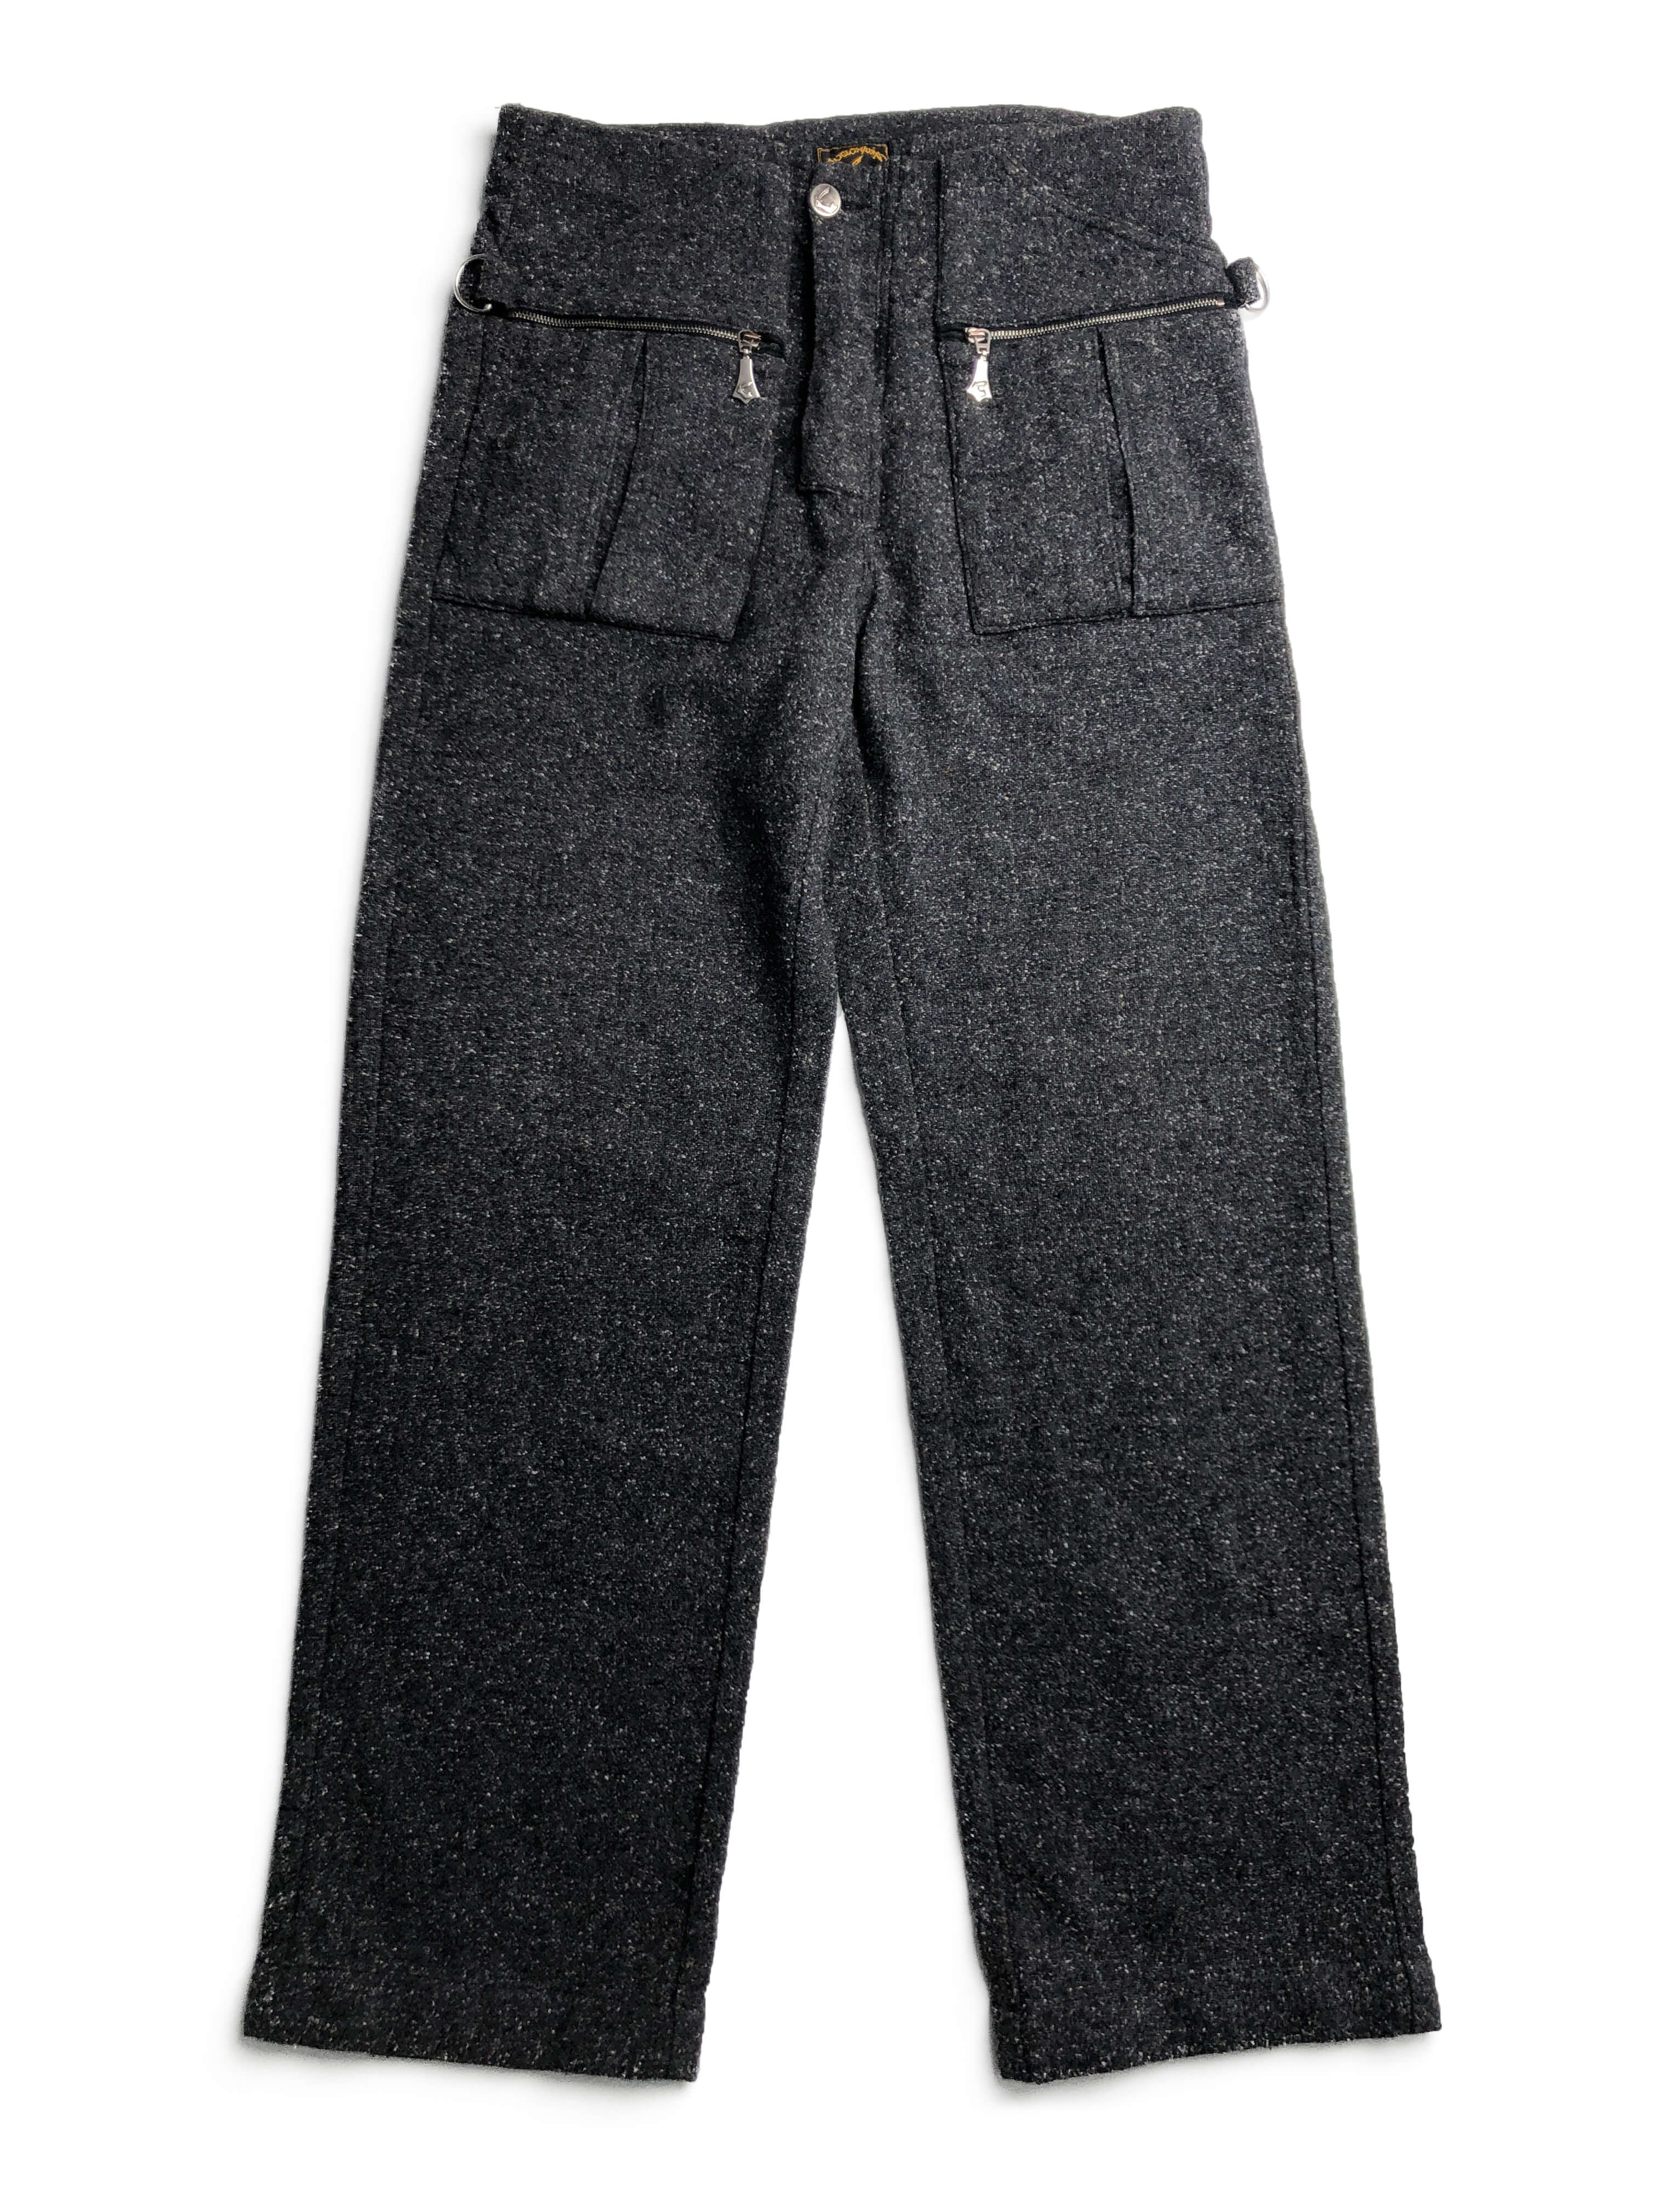 Vivienne Westwood ANGLOMANIA 90s tweed wide pants